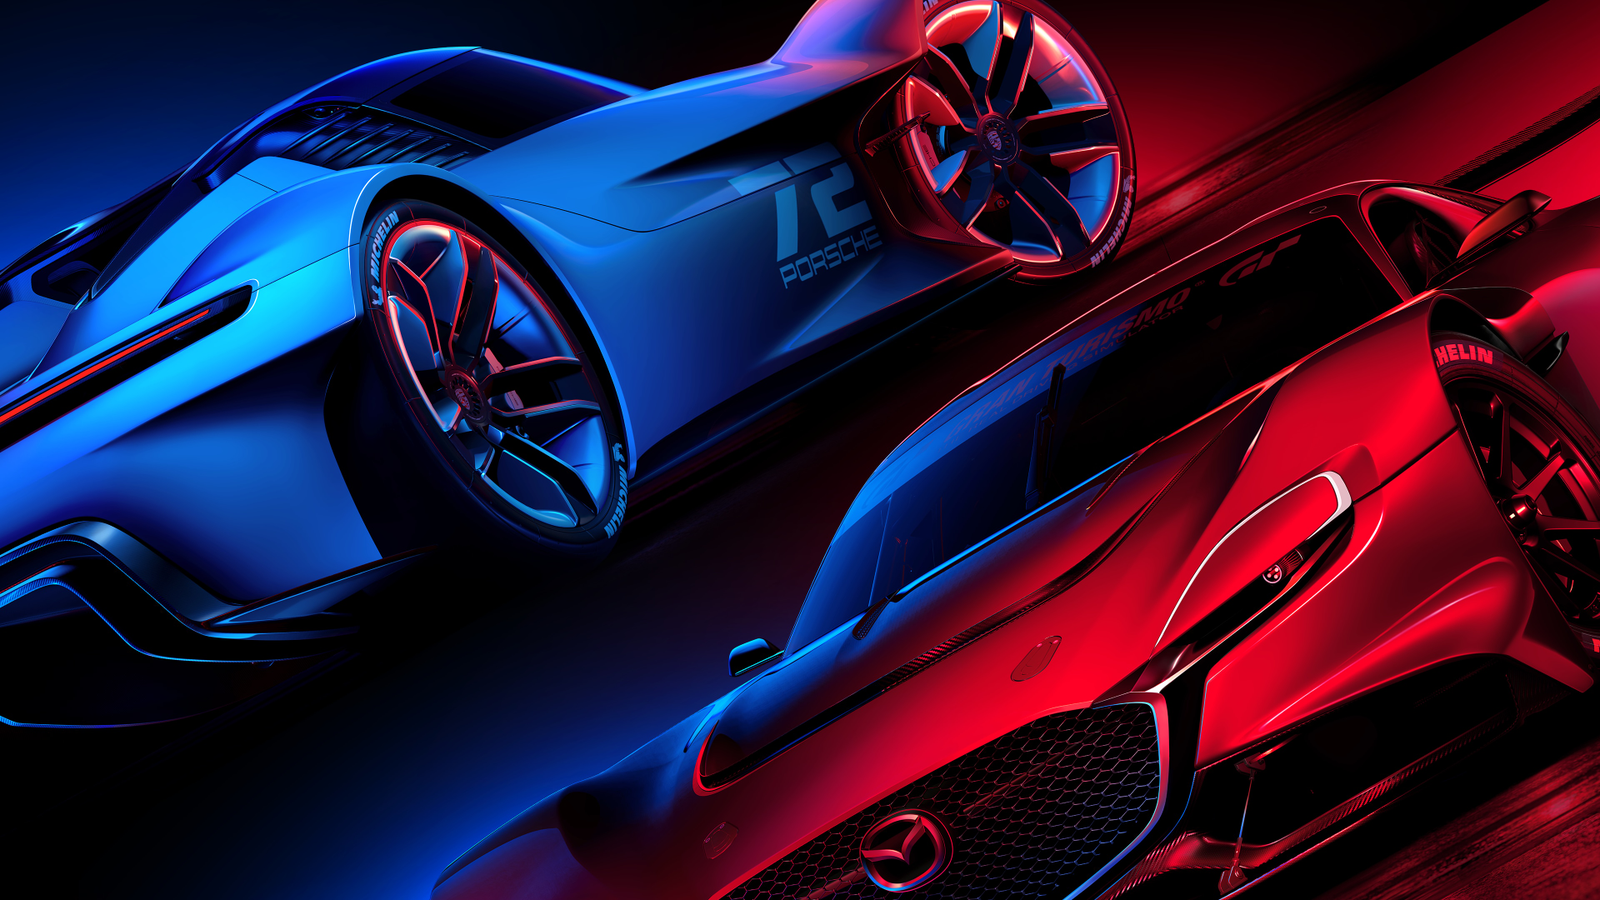 Gran Turismo HD Concept - IGN